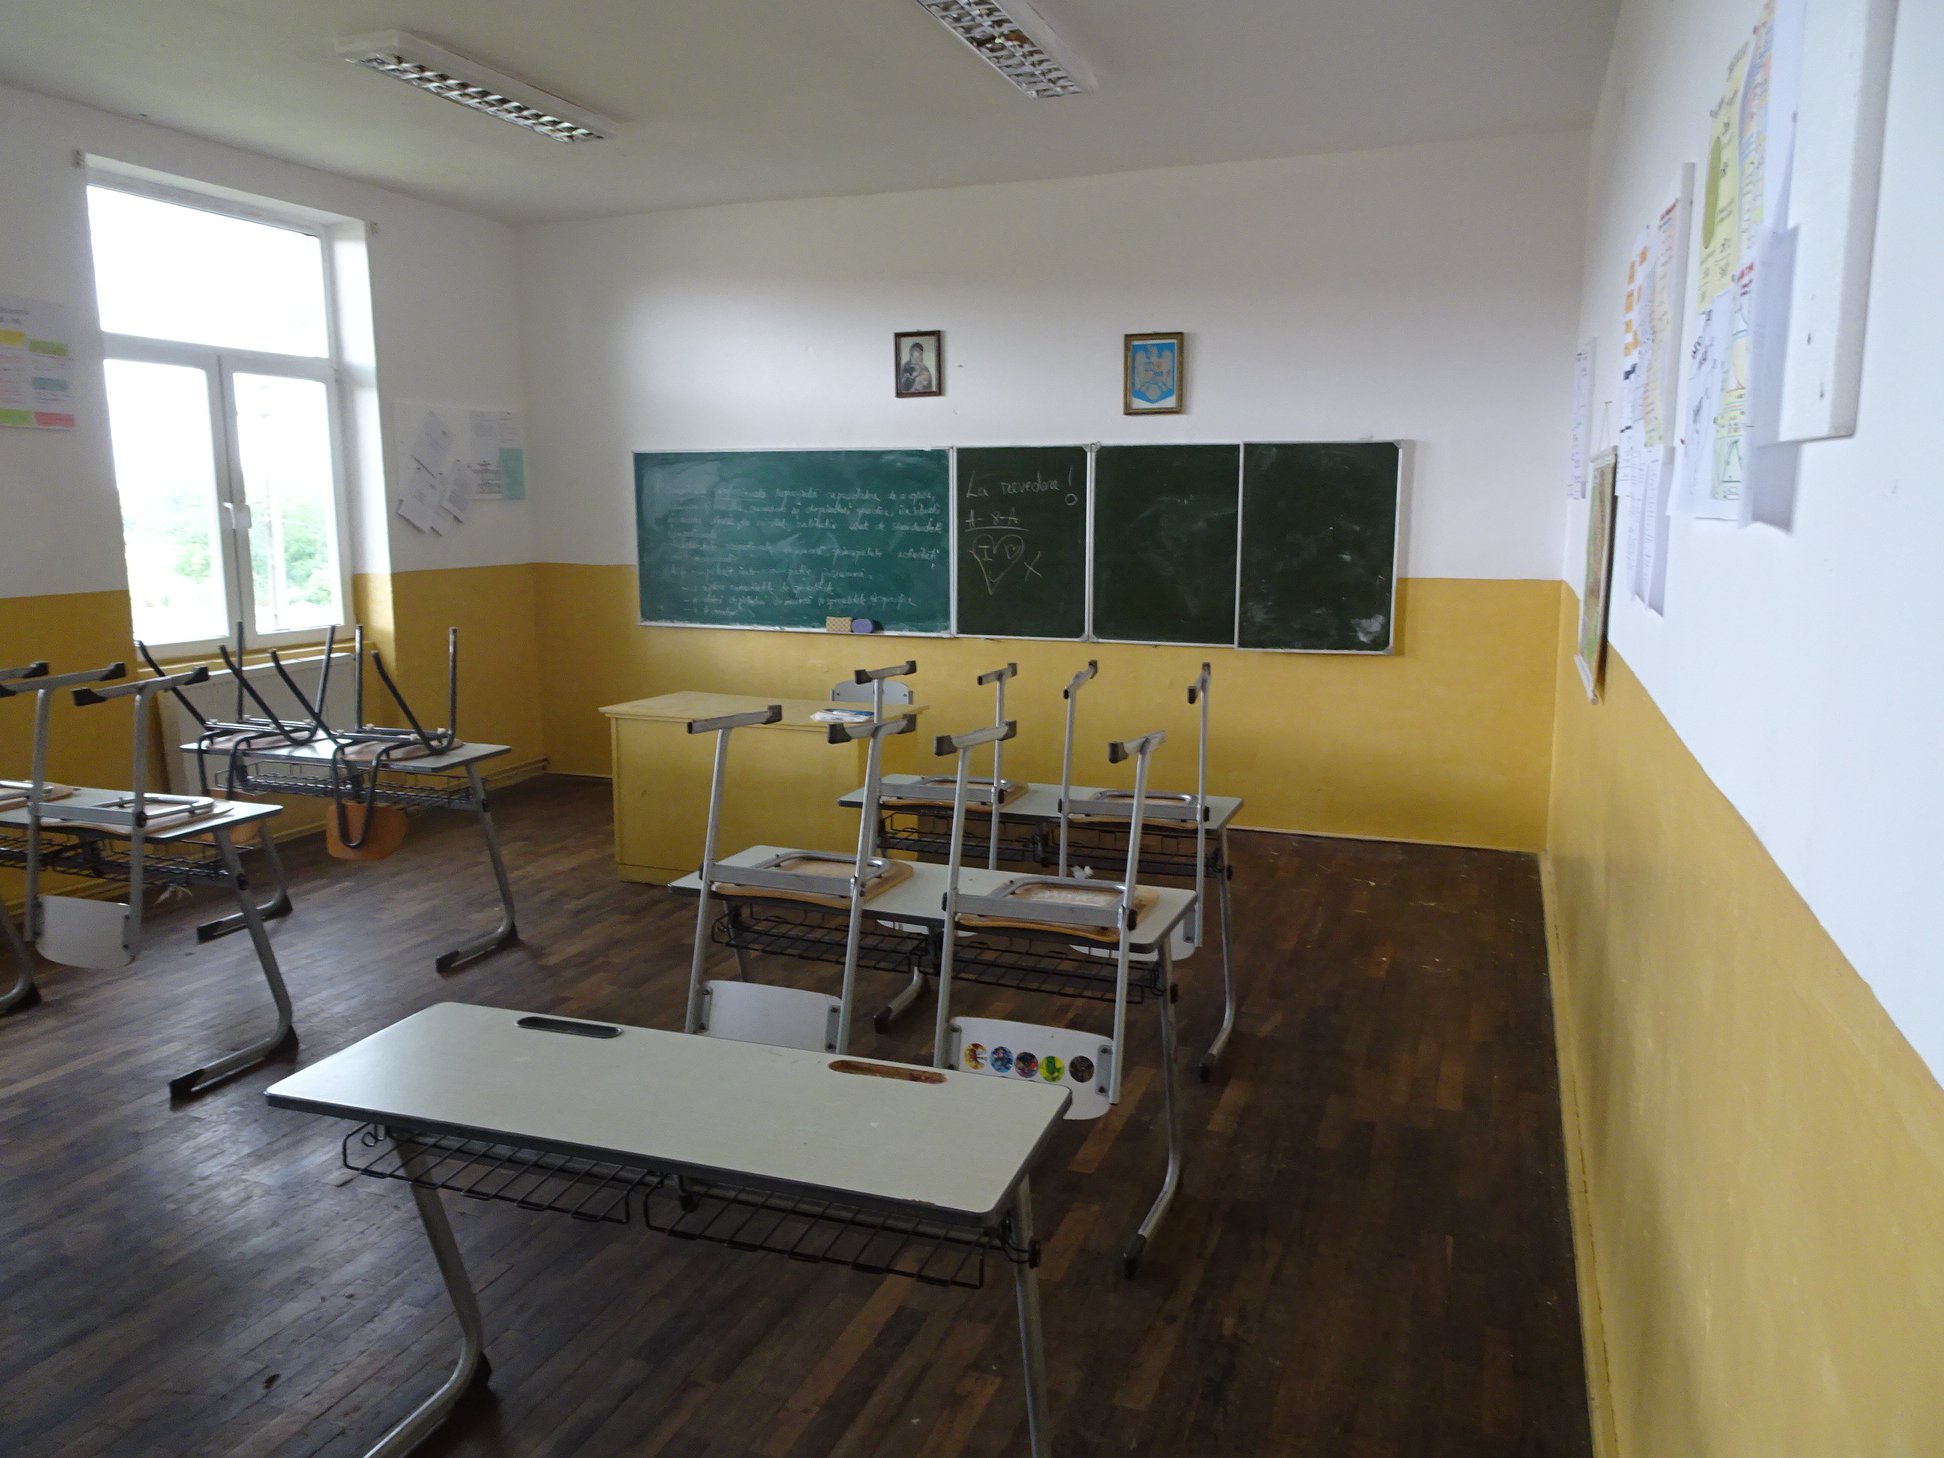 scoala gimnaziala grabat comuna lenauheim 2